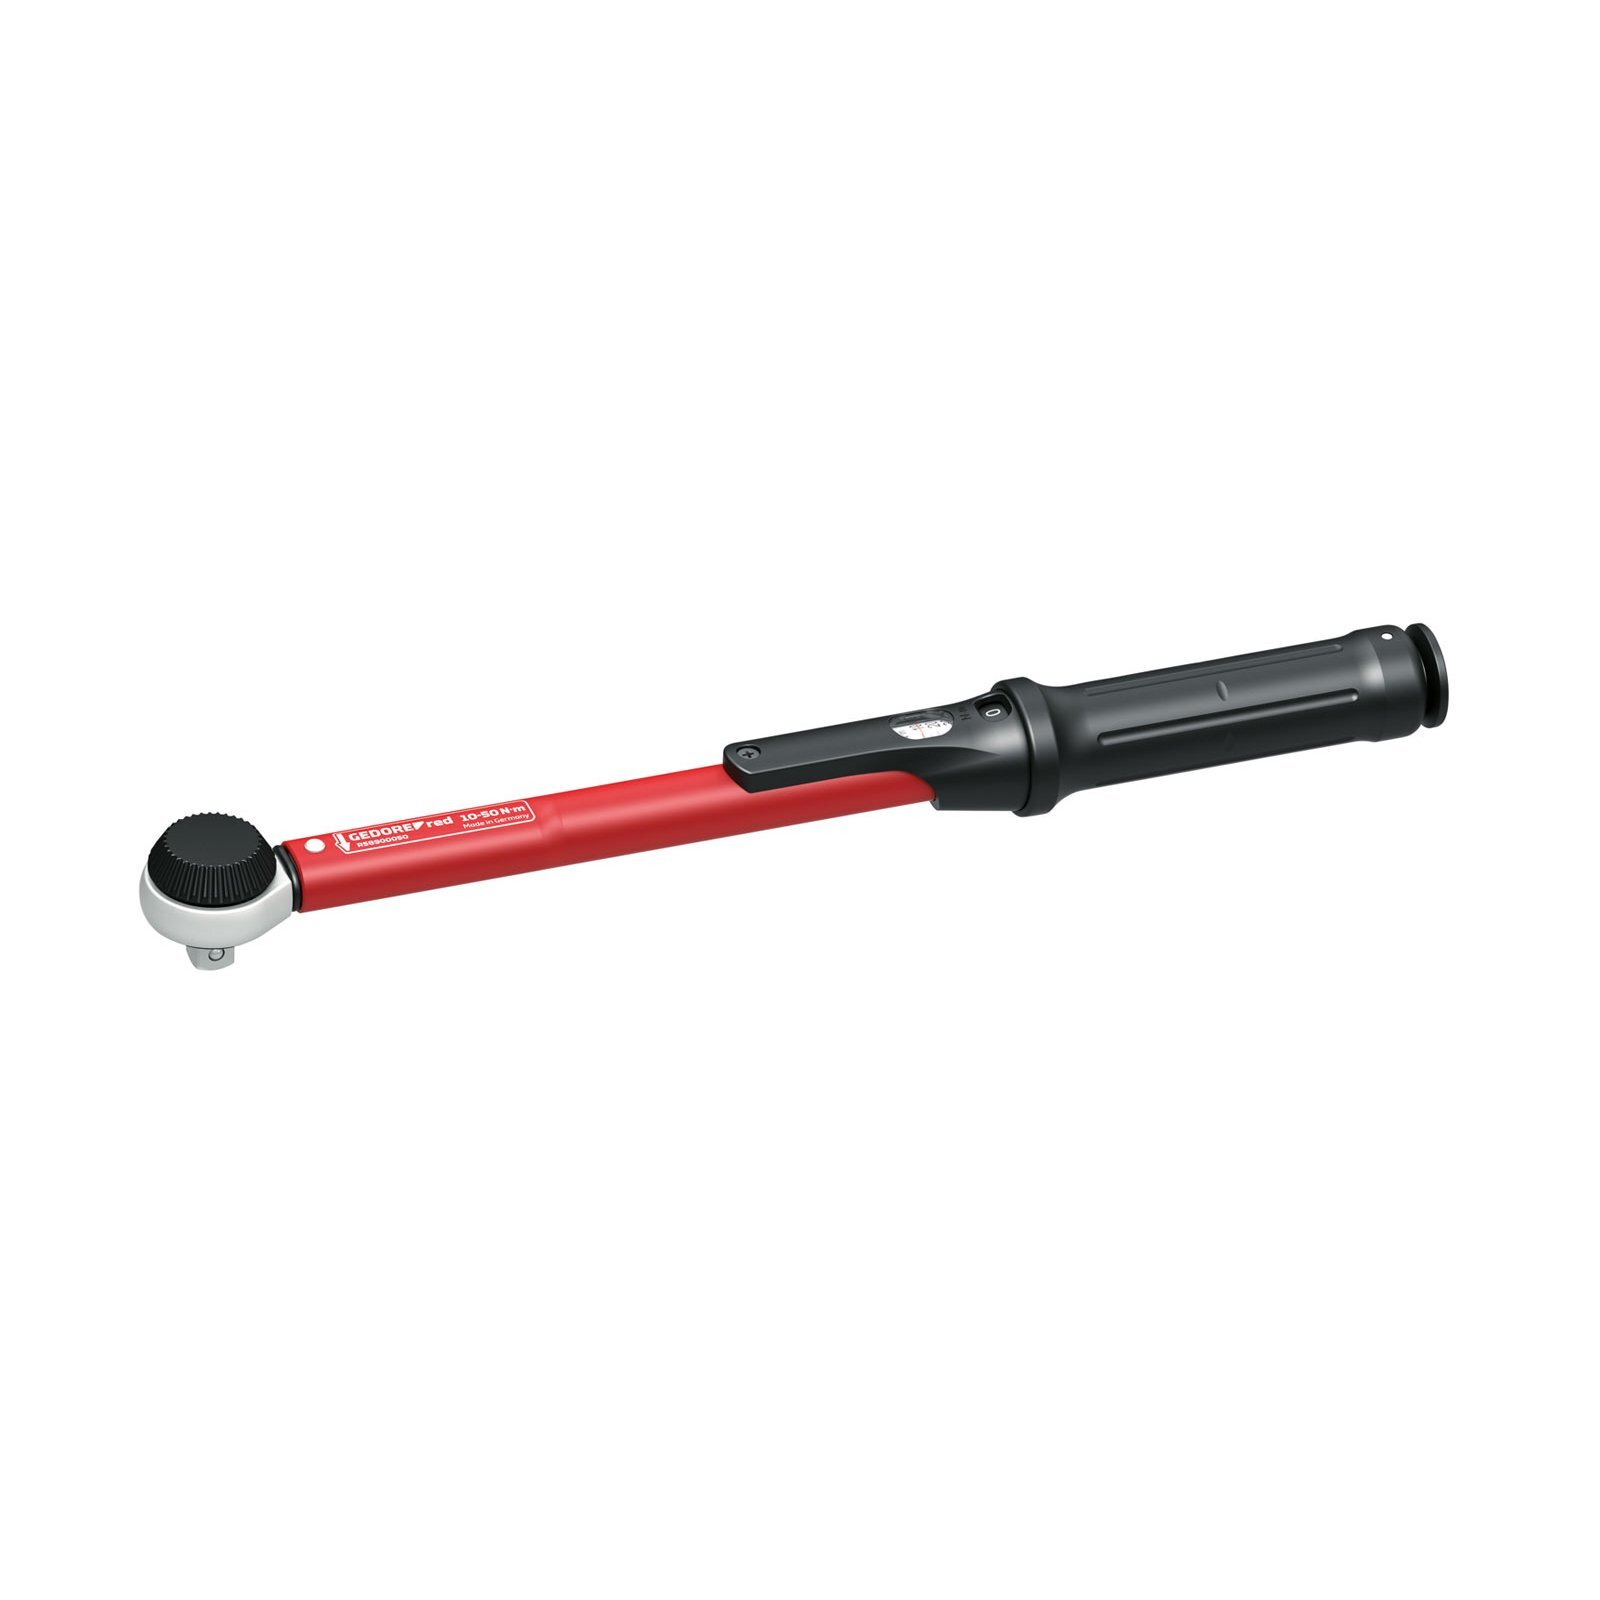 Gedore RED R58900050 momentsleutel 10-50Nm L.335mm rode draaimomentsleutel voor links- en rechtsdraaiende schroefdraad, 3/8 inch, 10-50 Nm, stalen buis, rood/zwart